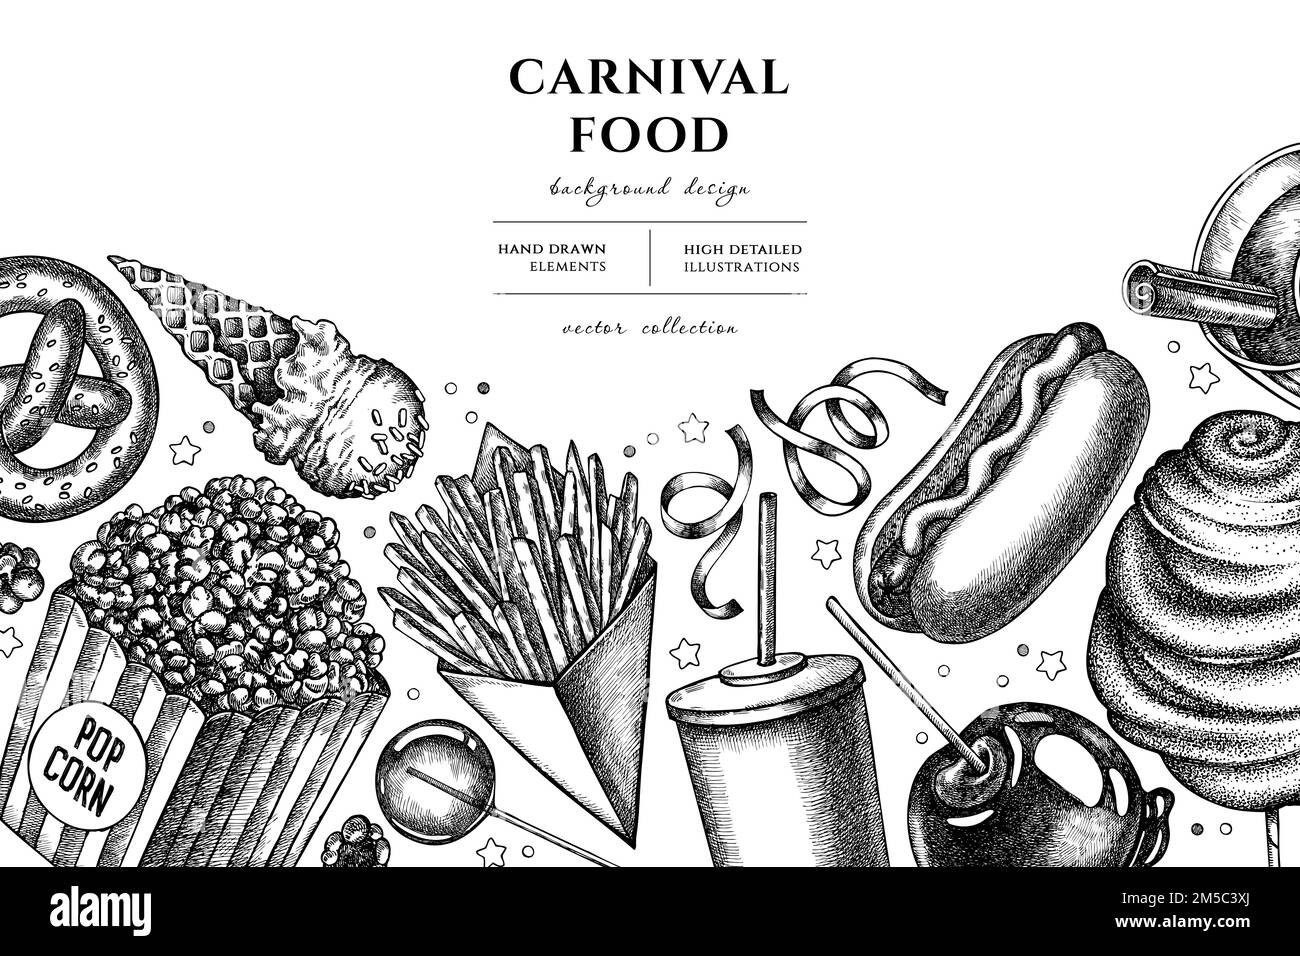 Dessin d'illustration de Carnival Food dessiné à la main. Arrière-plan avec frites, bretzel, pop-corn, limonade, hot dog, vin chaud, pomme caramel Illustration de Vecteur